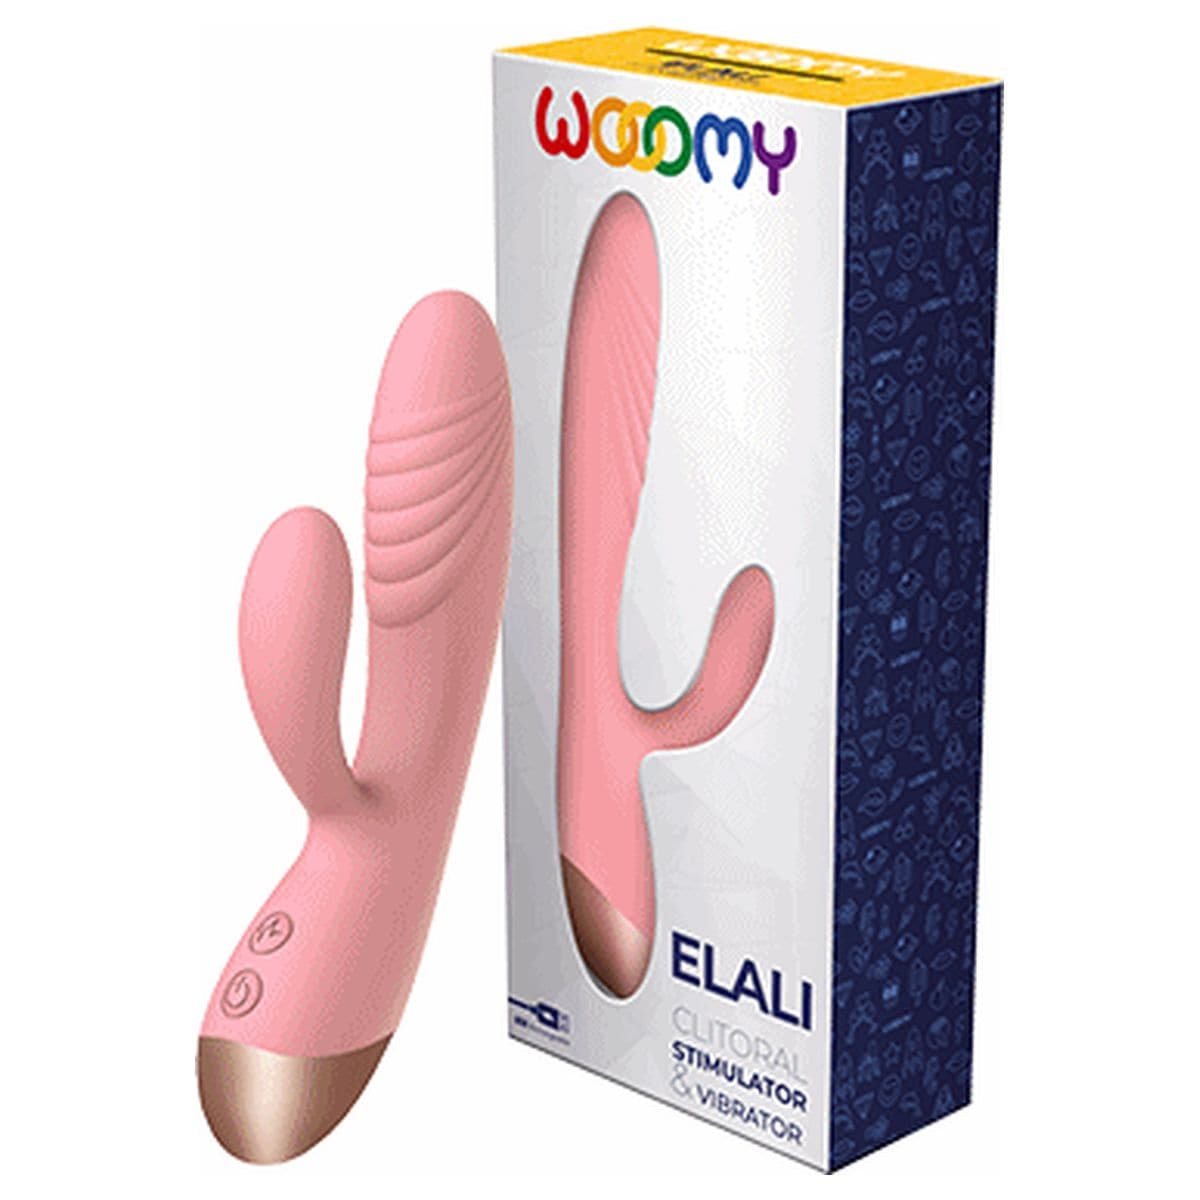 Wooomy ELALI com Estimulador Clitóris USB Rosa, 18cm Ø3cm, 10vibrações